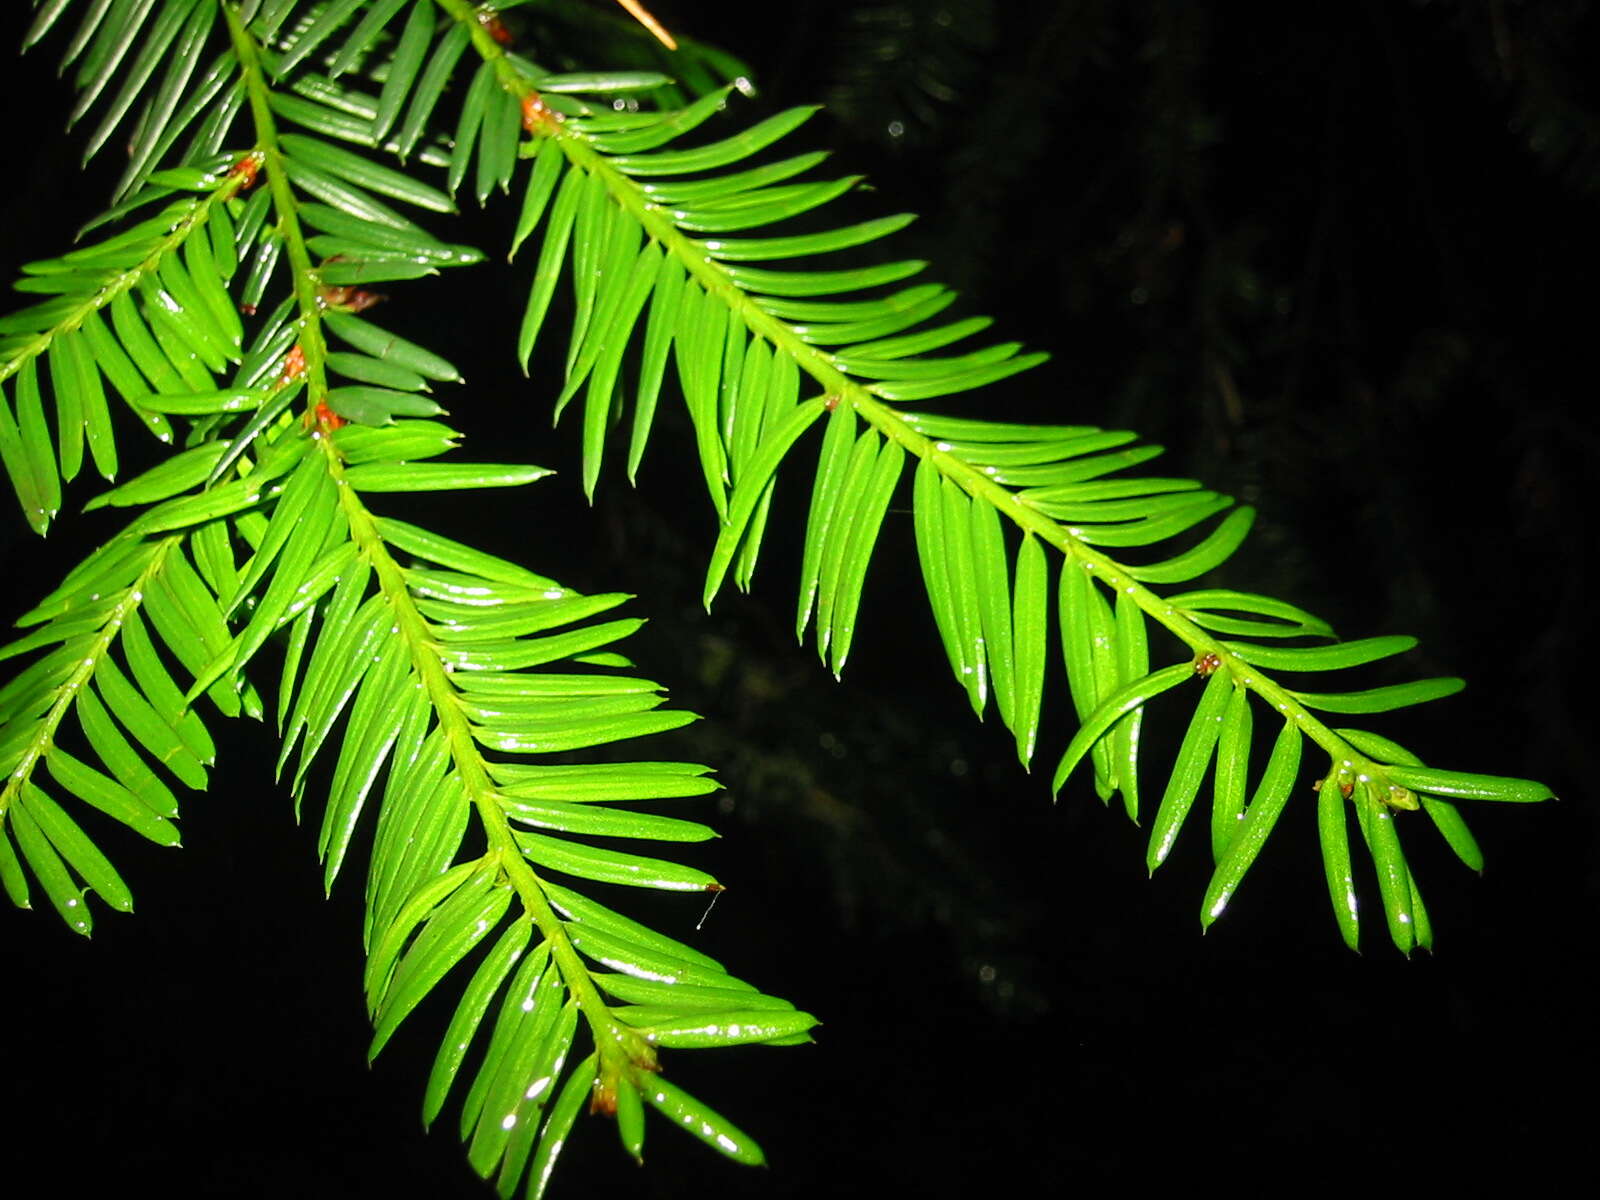 Sivun Taxus brevifolia Nutt. kuva